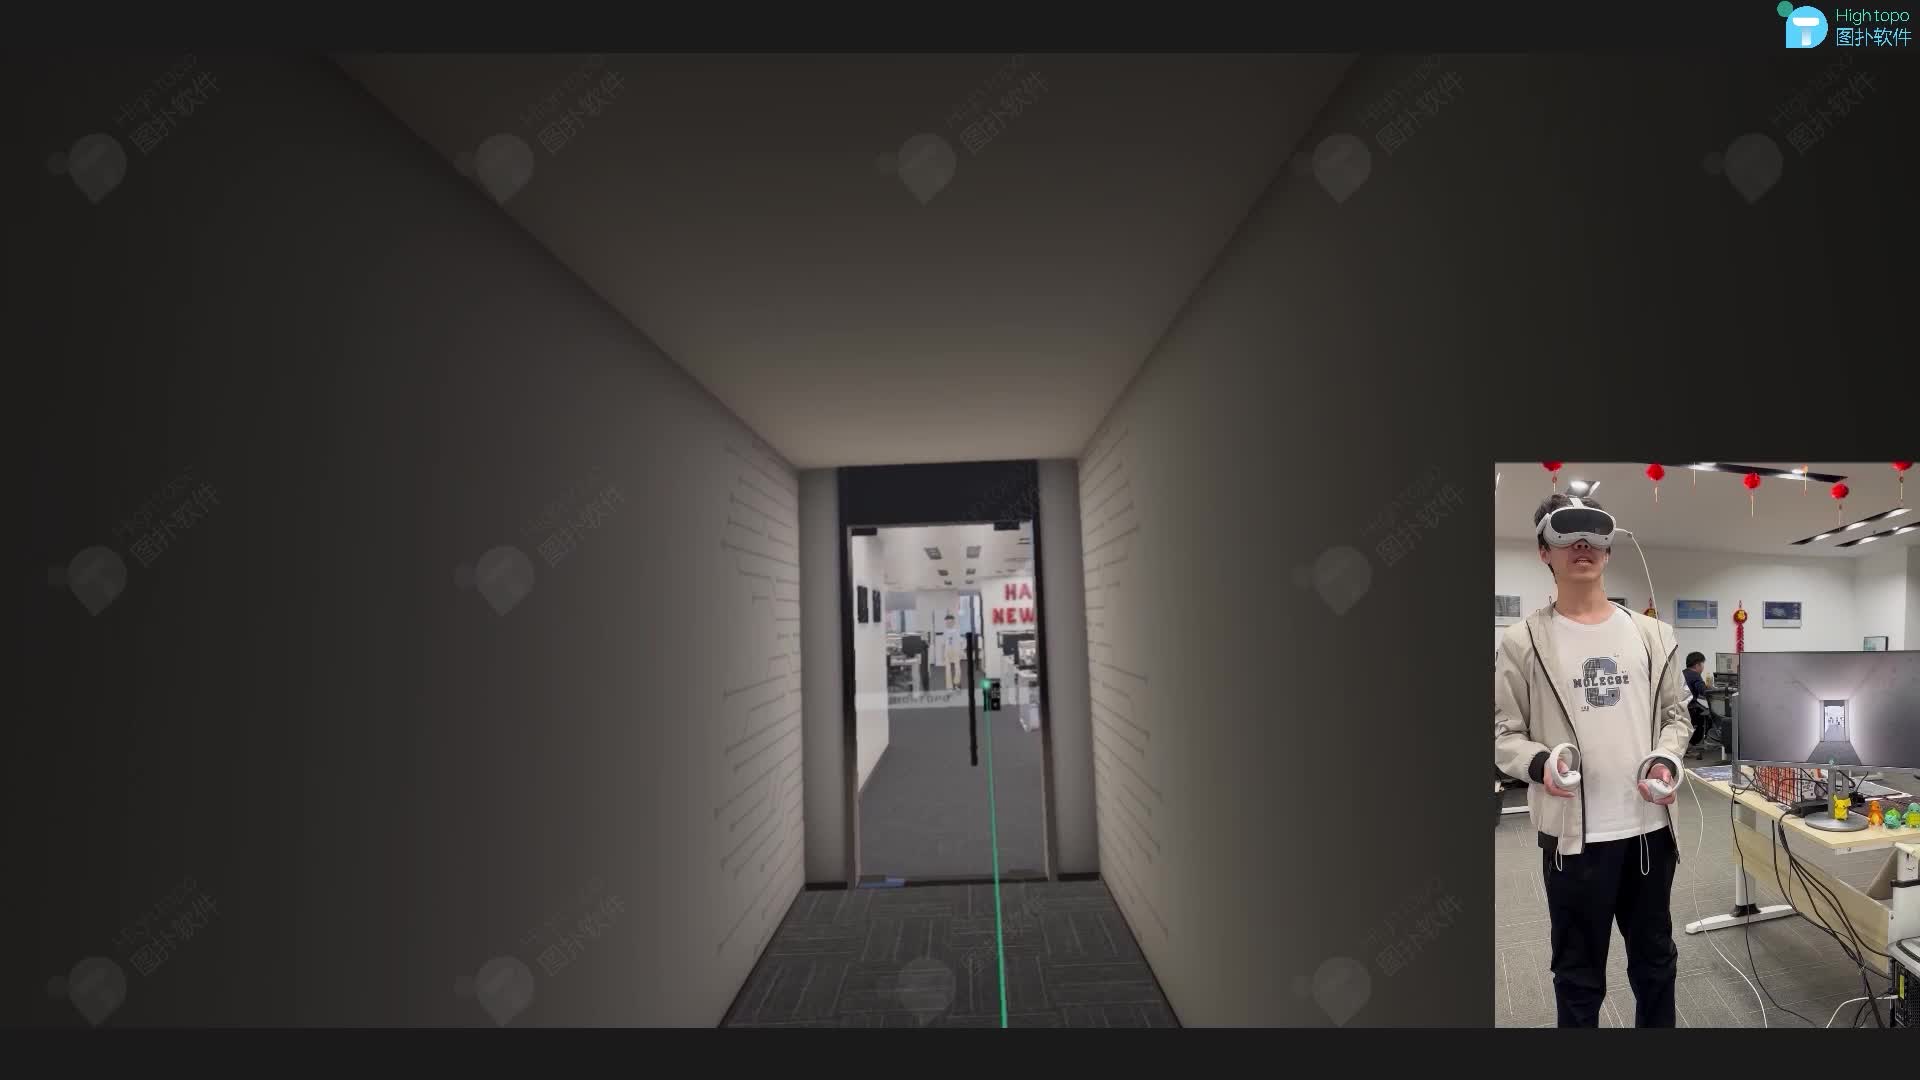 虛擬現實 VR 智慧辦公室可視化監控 #數字孿生 #三維可視化 #VR #虛擬現實 